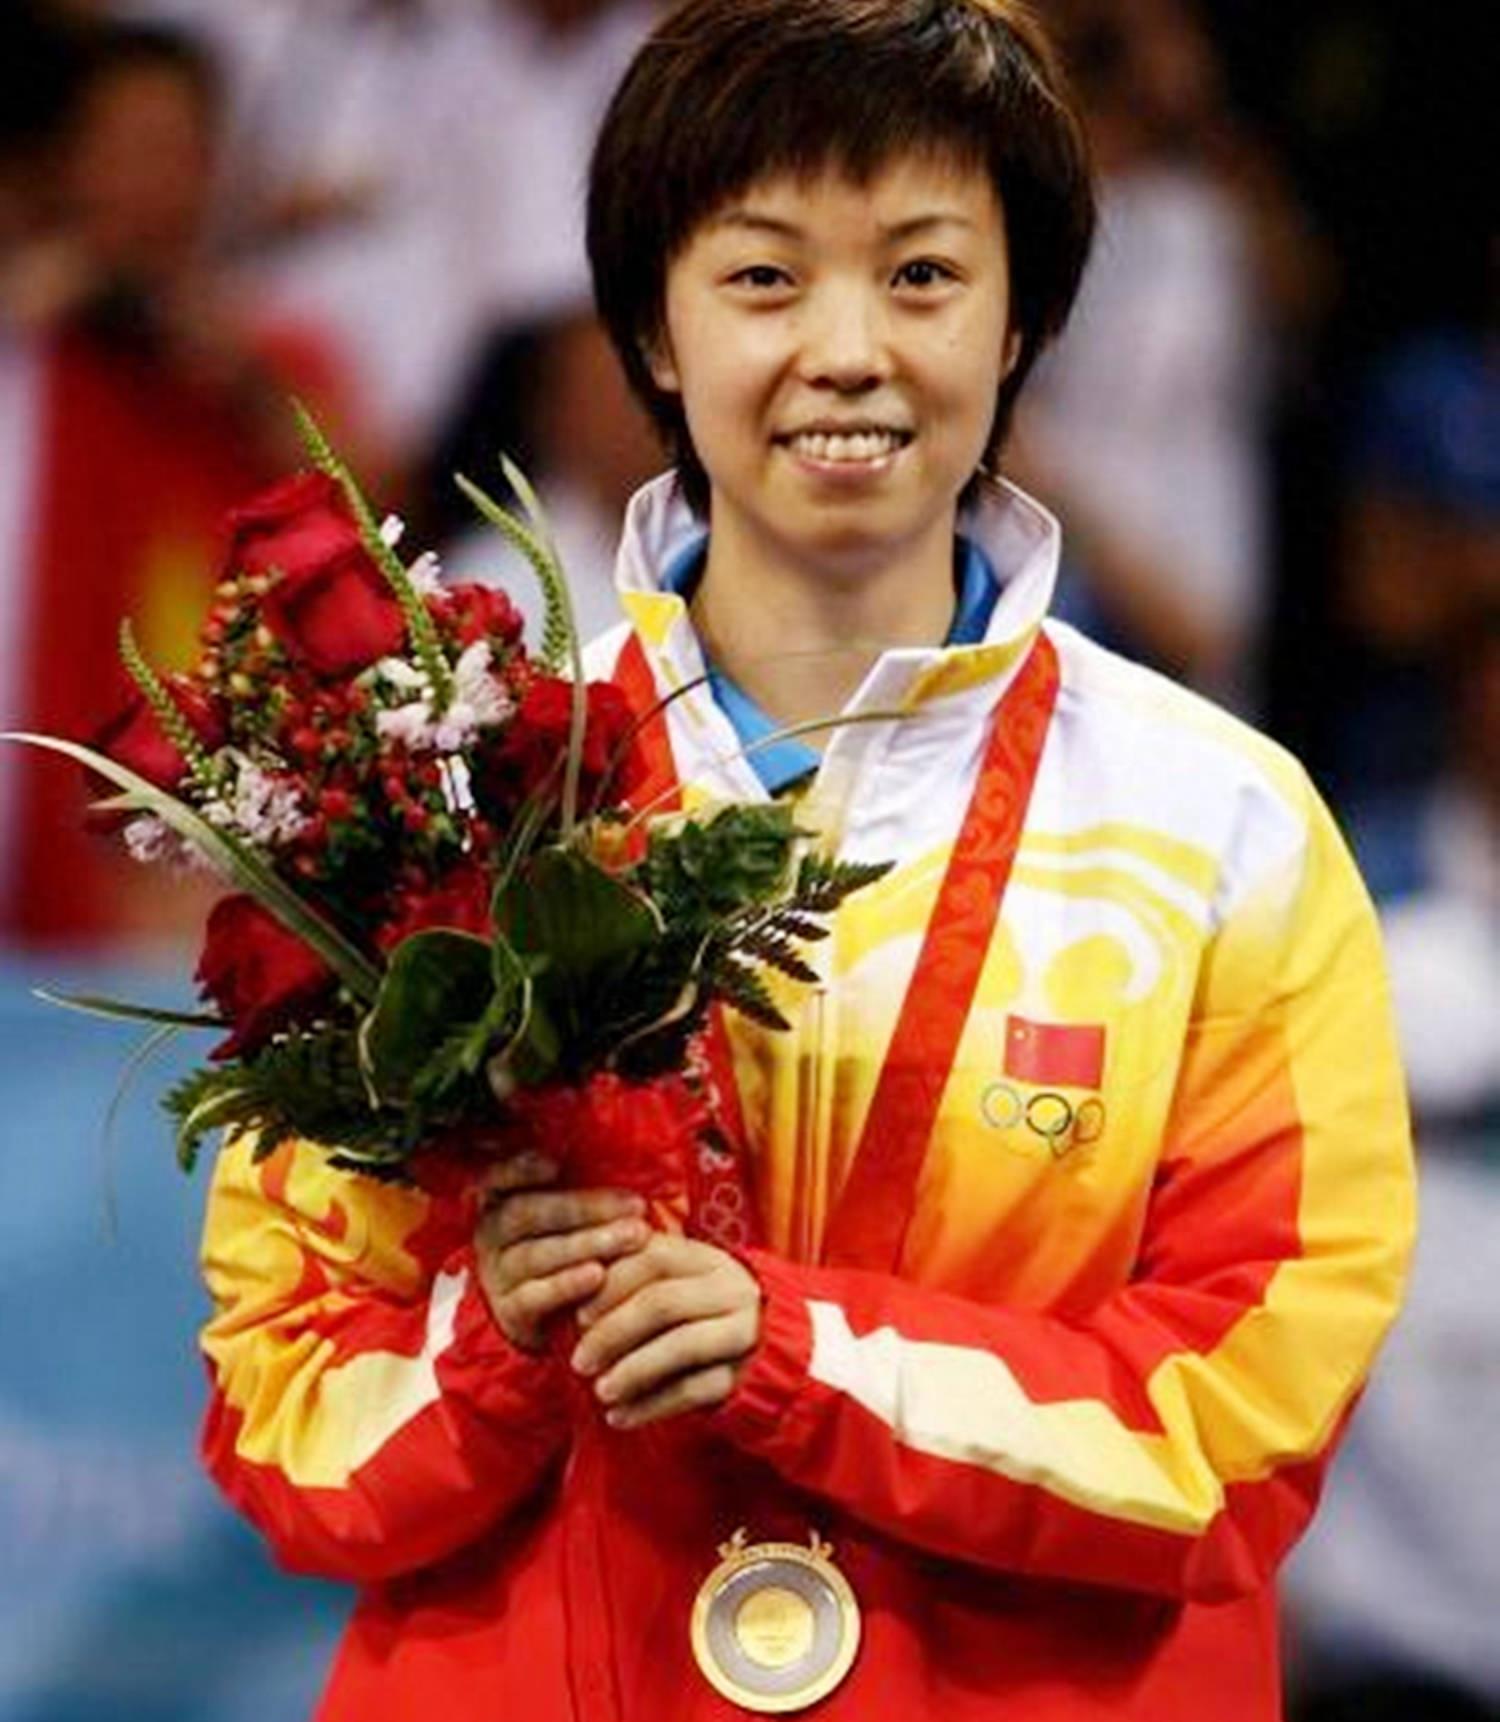 在国家队期间,张怡宁克服重重困难,最终成长为中国乒乓球的领军人物